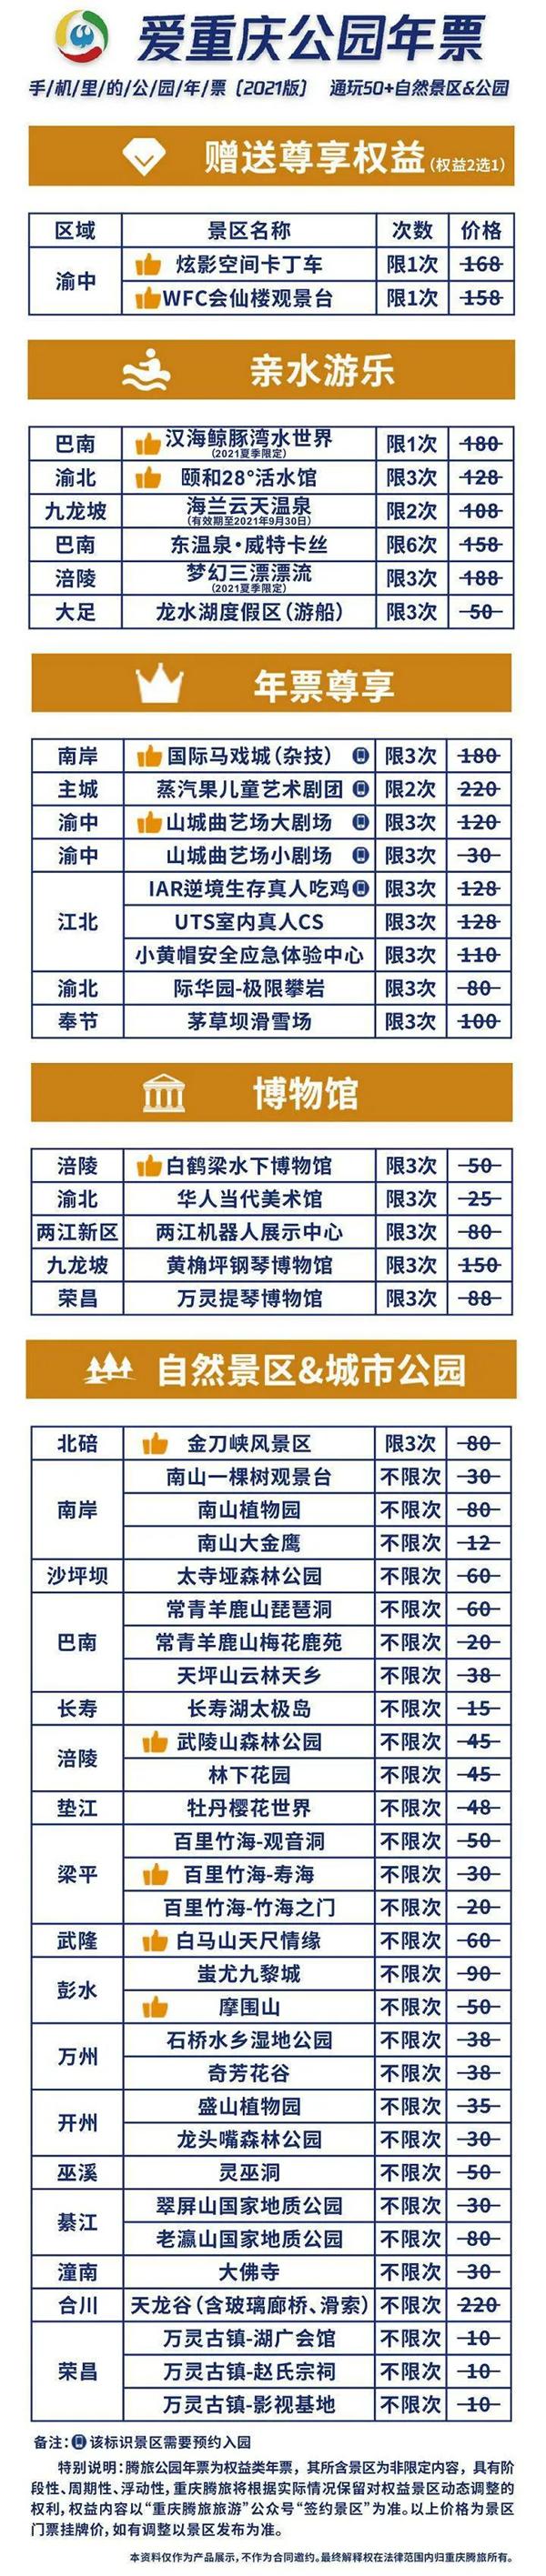 2021年重庆旅游年卡汇总-优惠政策及包含景点